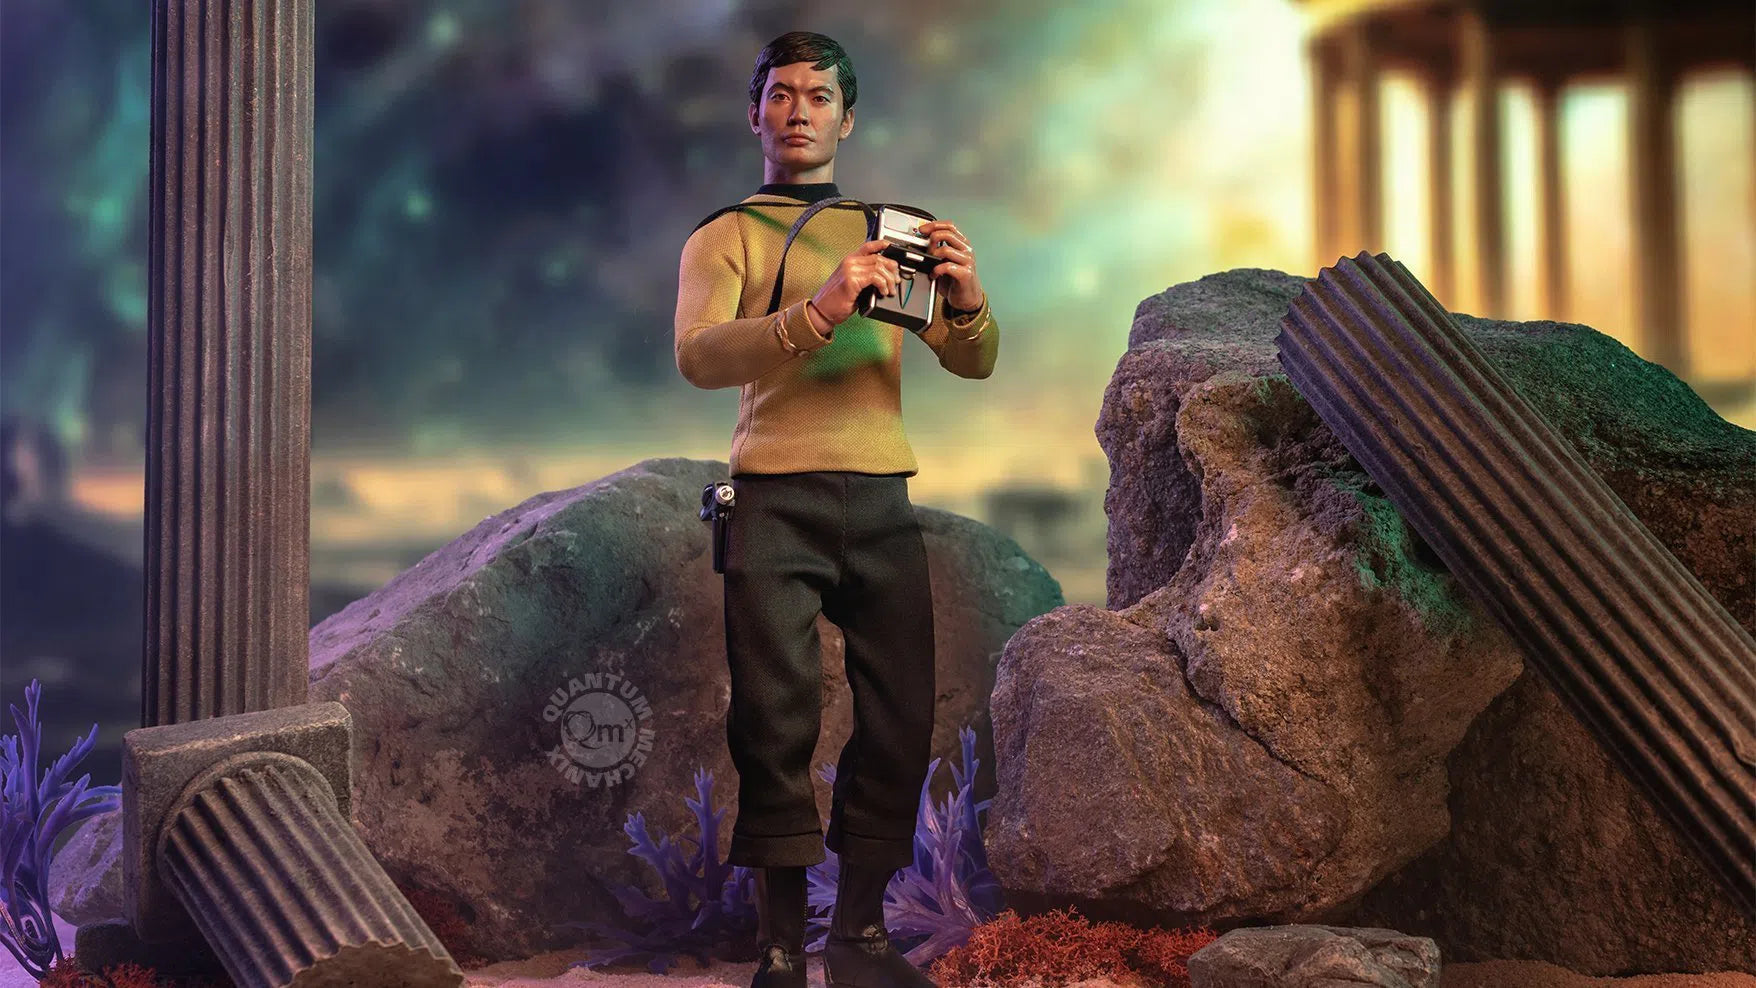 Sulu: Star Trek: TOS Figure: Qmx: QMX